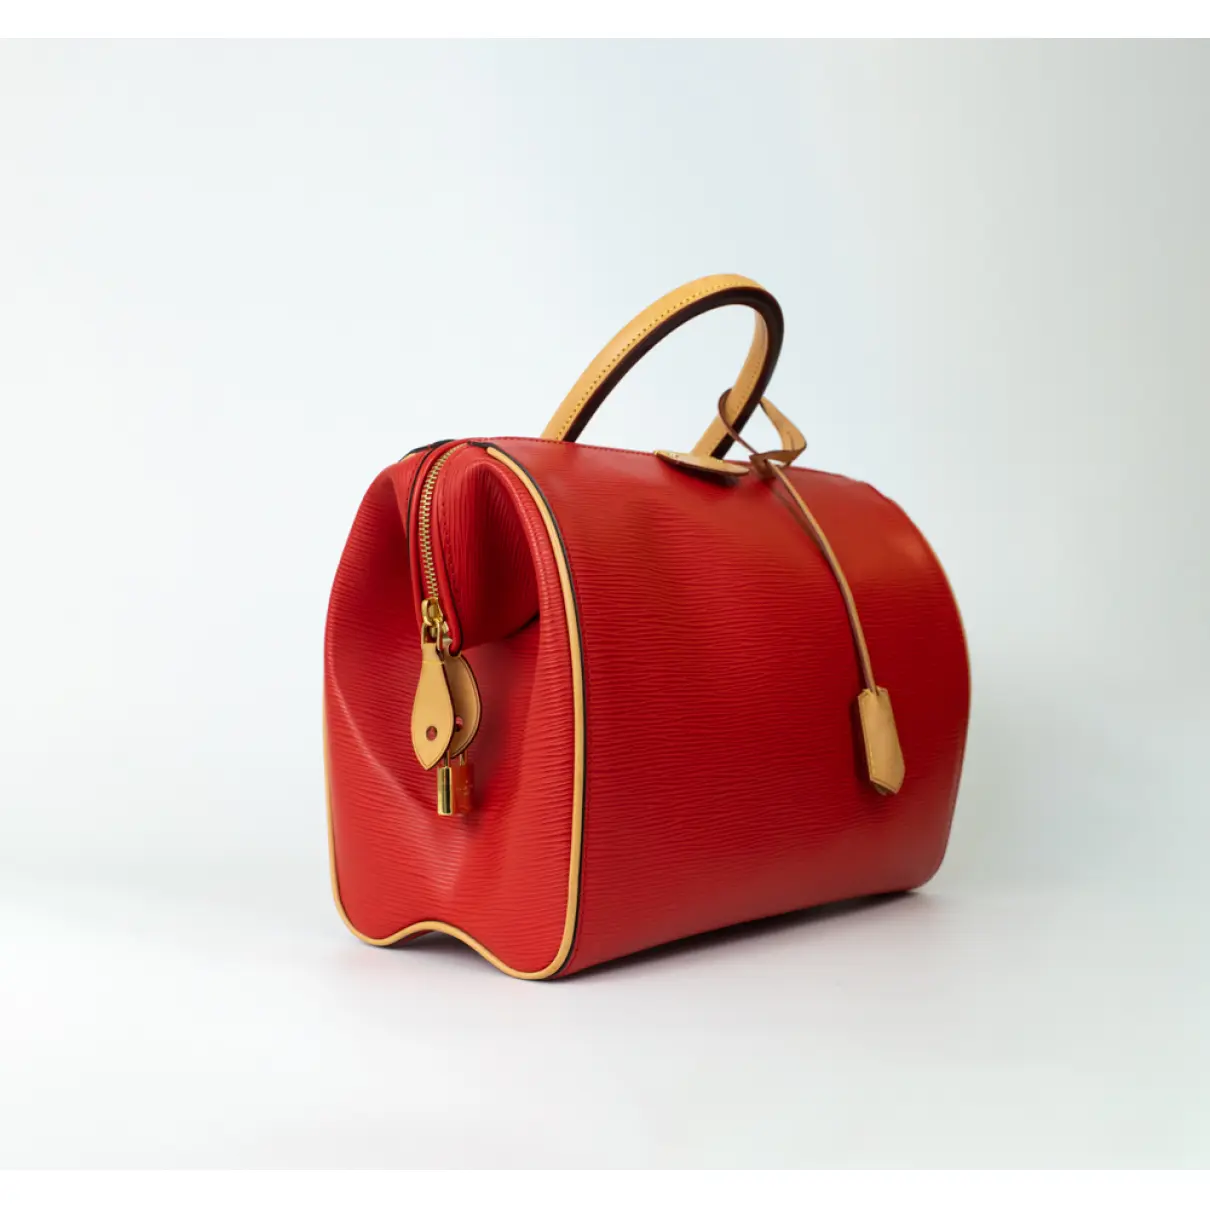 Doc leather handbag Louis Vuitton